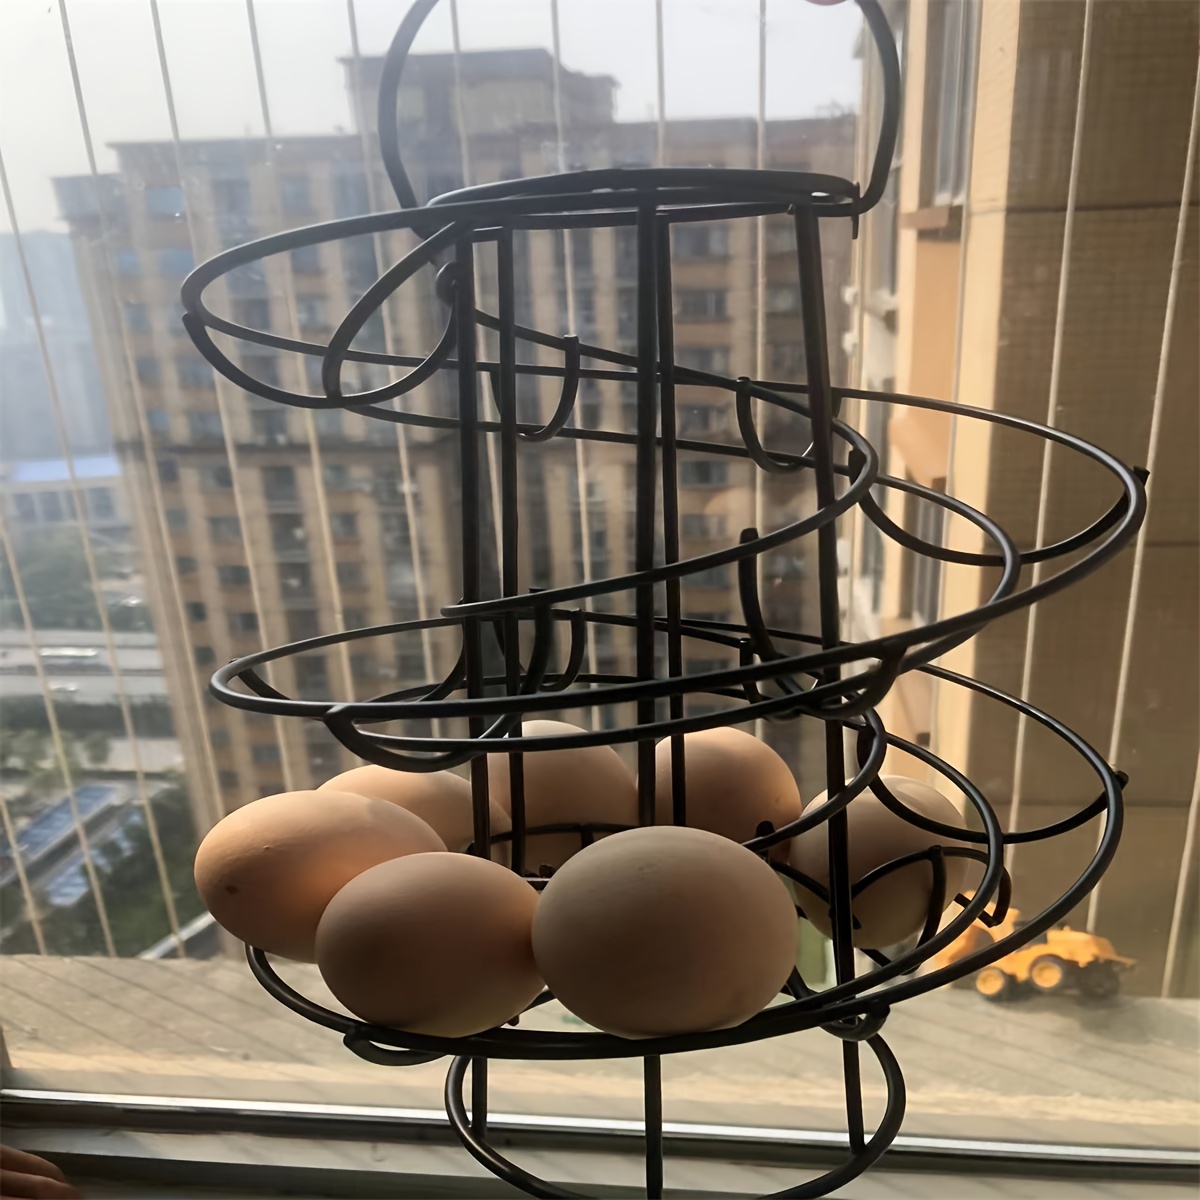  Fresh Egg Holder Countertop, Egg Skelter, Spiral Egg Holder